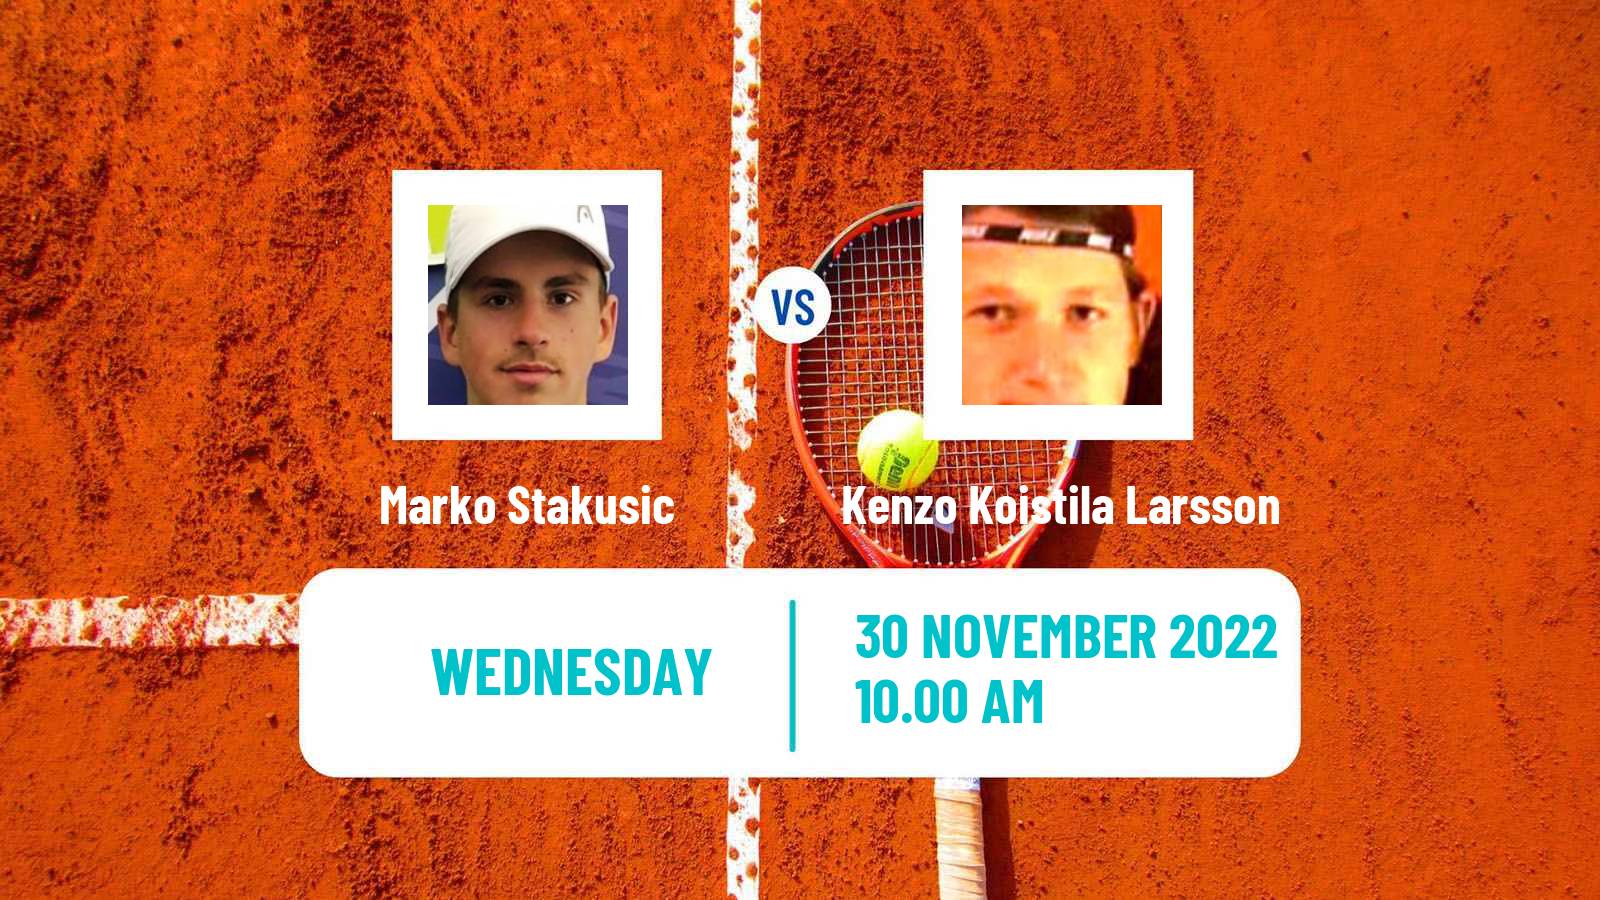 Tennis ITF Tournaments Marko Stakusic - Kenzo Koistila Larsson